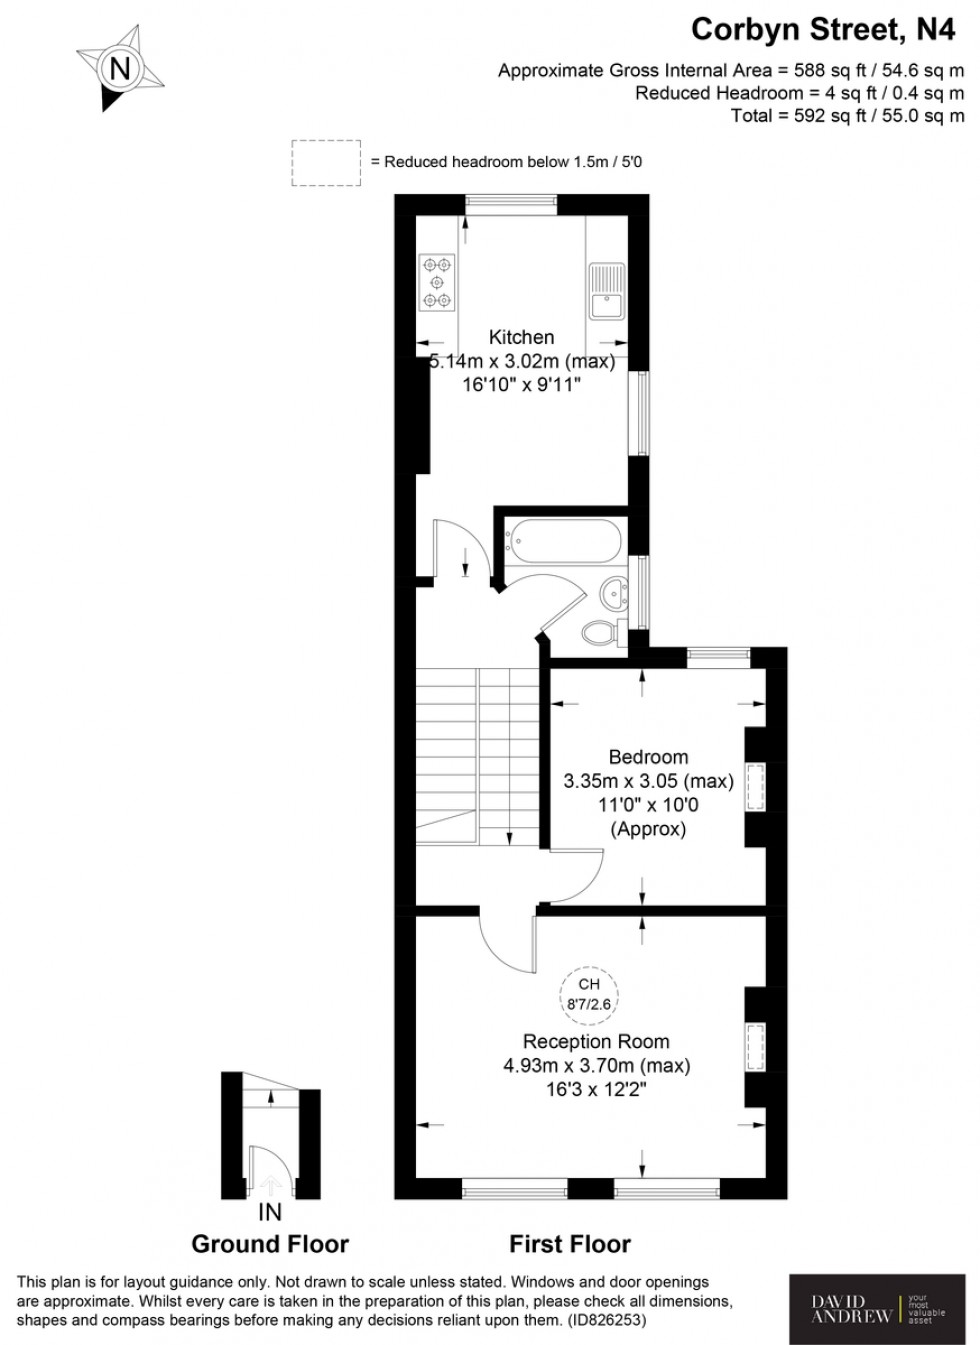 Floorplan for Corbyn Street, N4 3BX